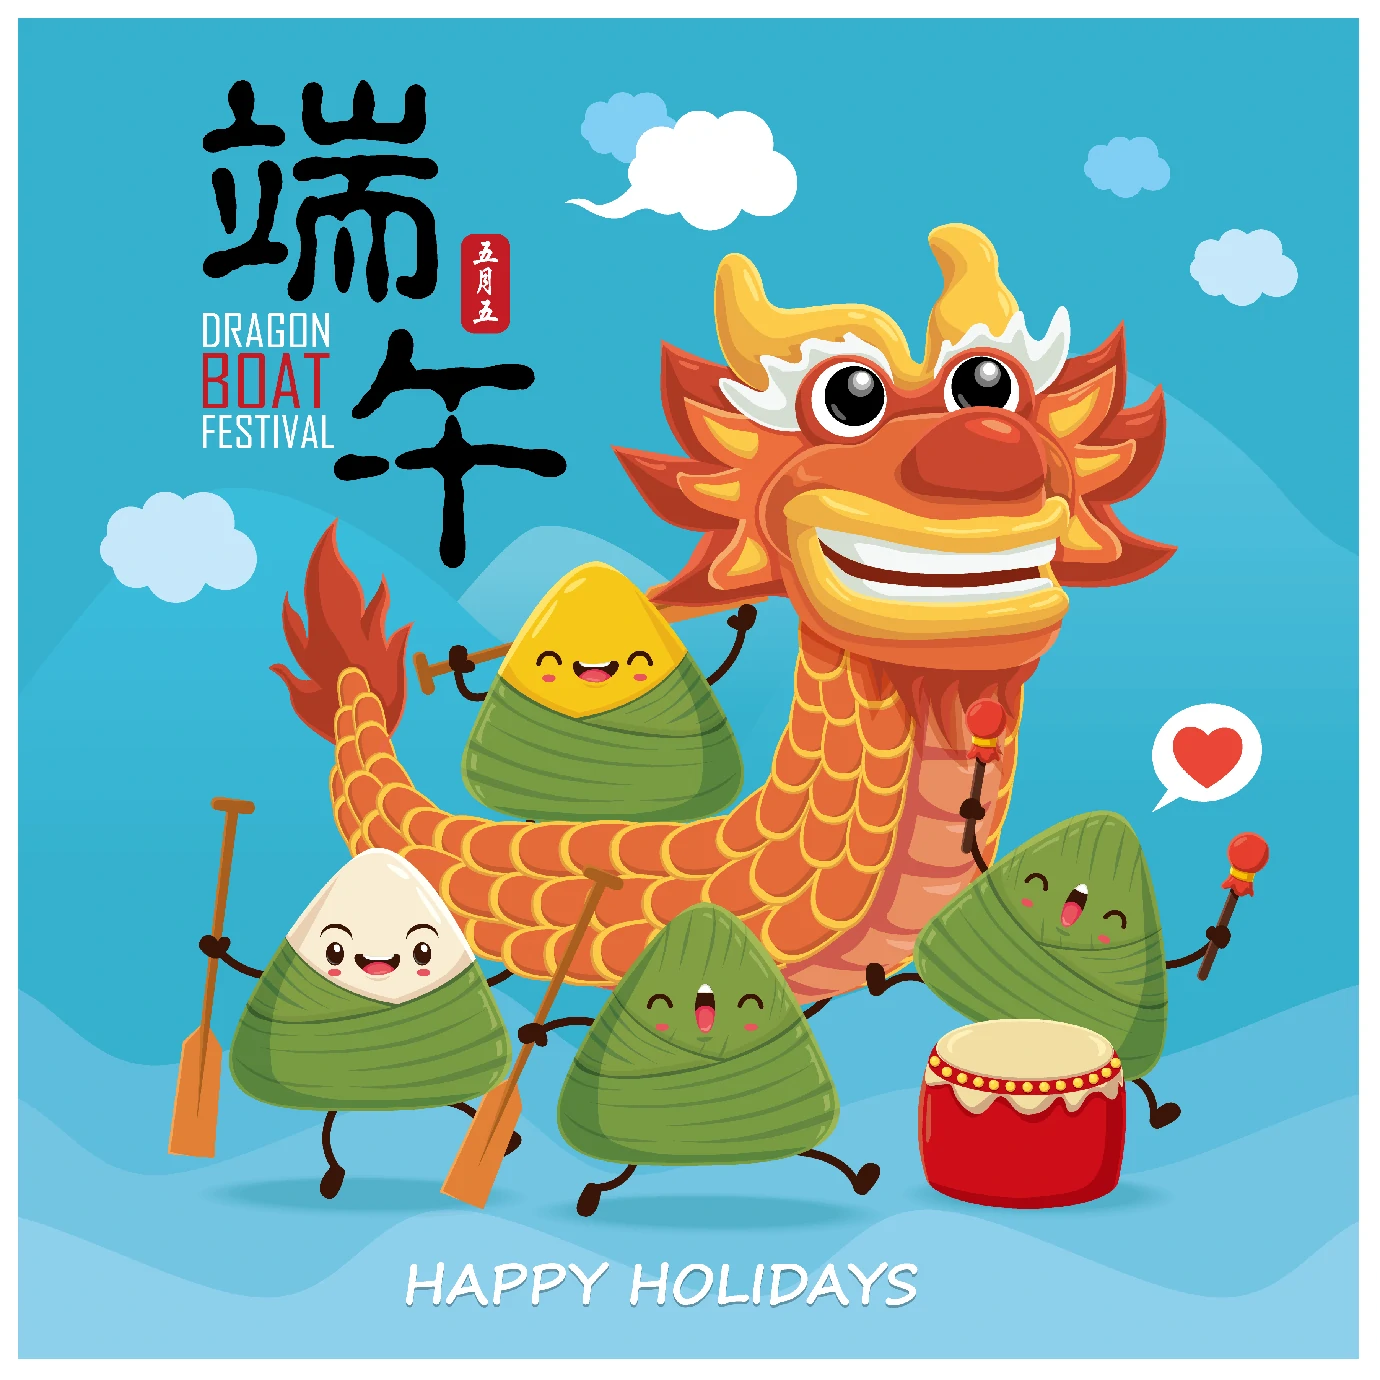 中国传统节日卡通手绘端午节赛龙舟粽子插画海报AI矢量设计素材【020】